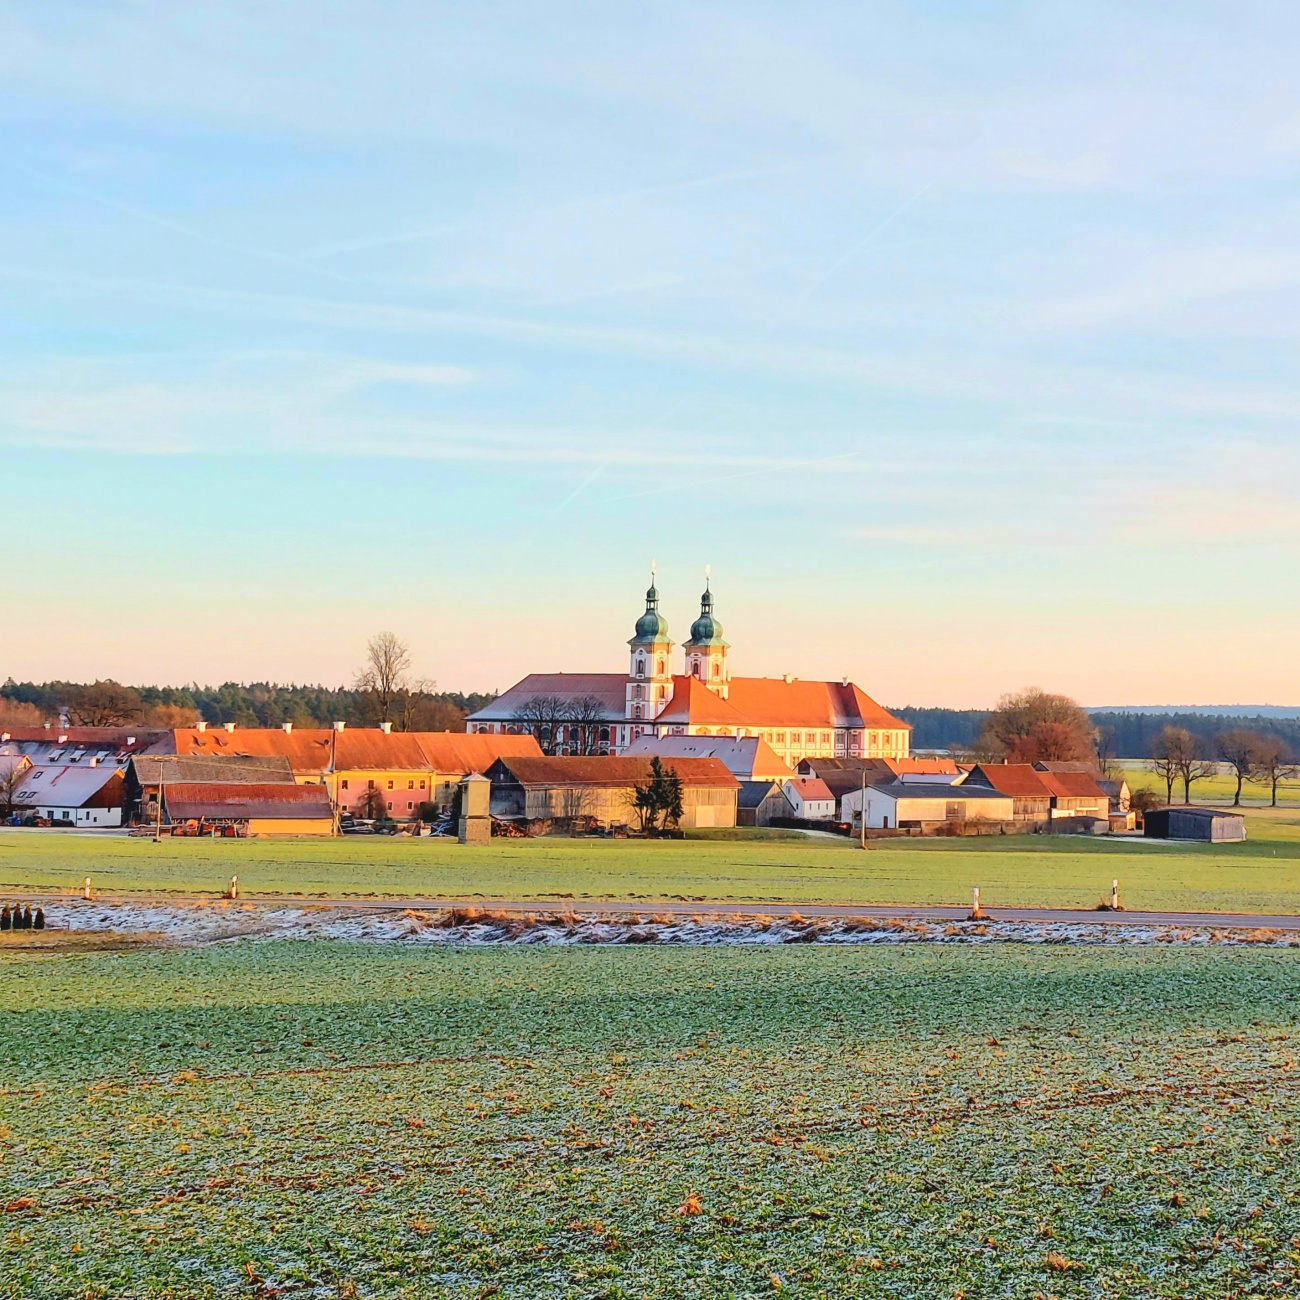 Foto: Martin Zehrer - Kloster Speinshart im Winter...<br />
<br />
Das Wetter war heute sehr sonnig aber tagsüber mit ca. -3 Grad auch recht kalt.<br />
Von gestern auf heute war es nicht nur die längste Nac 